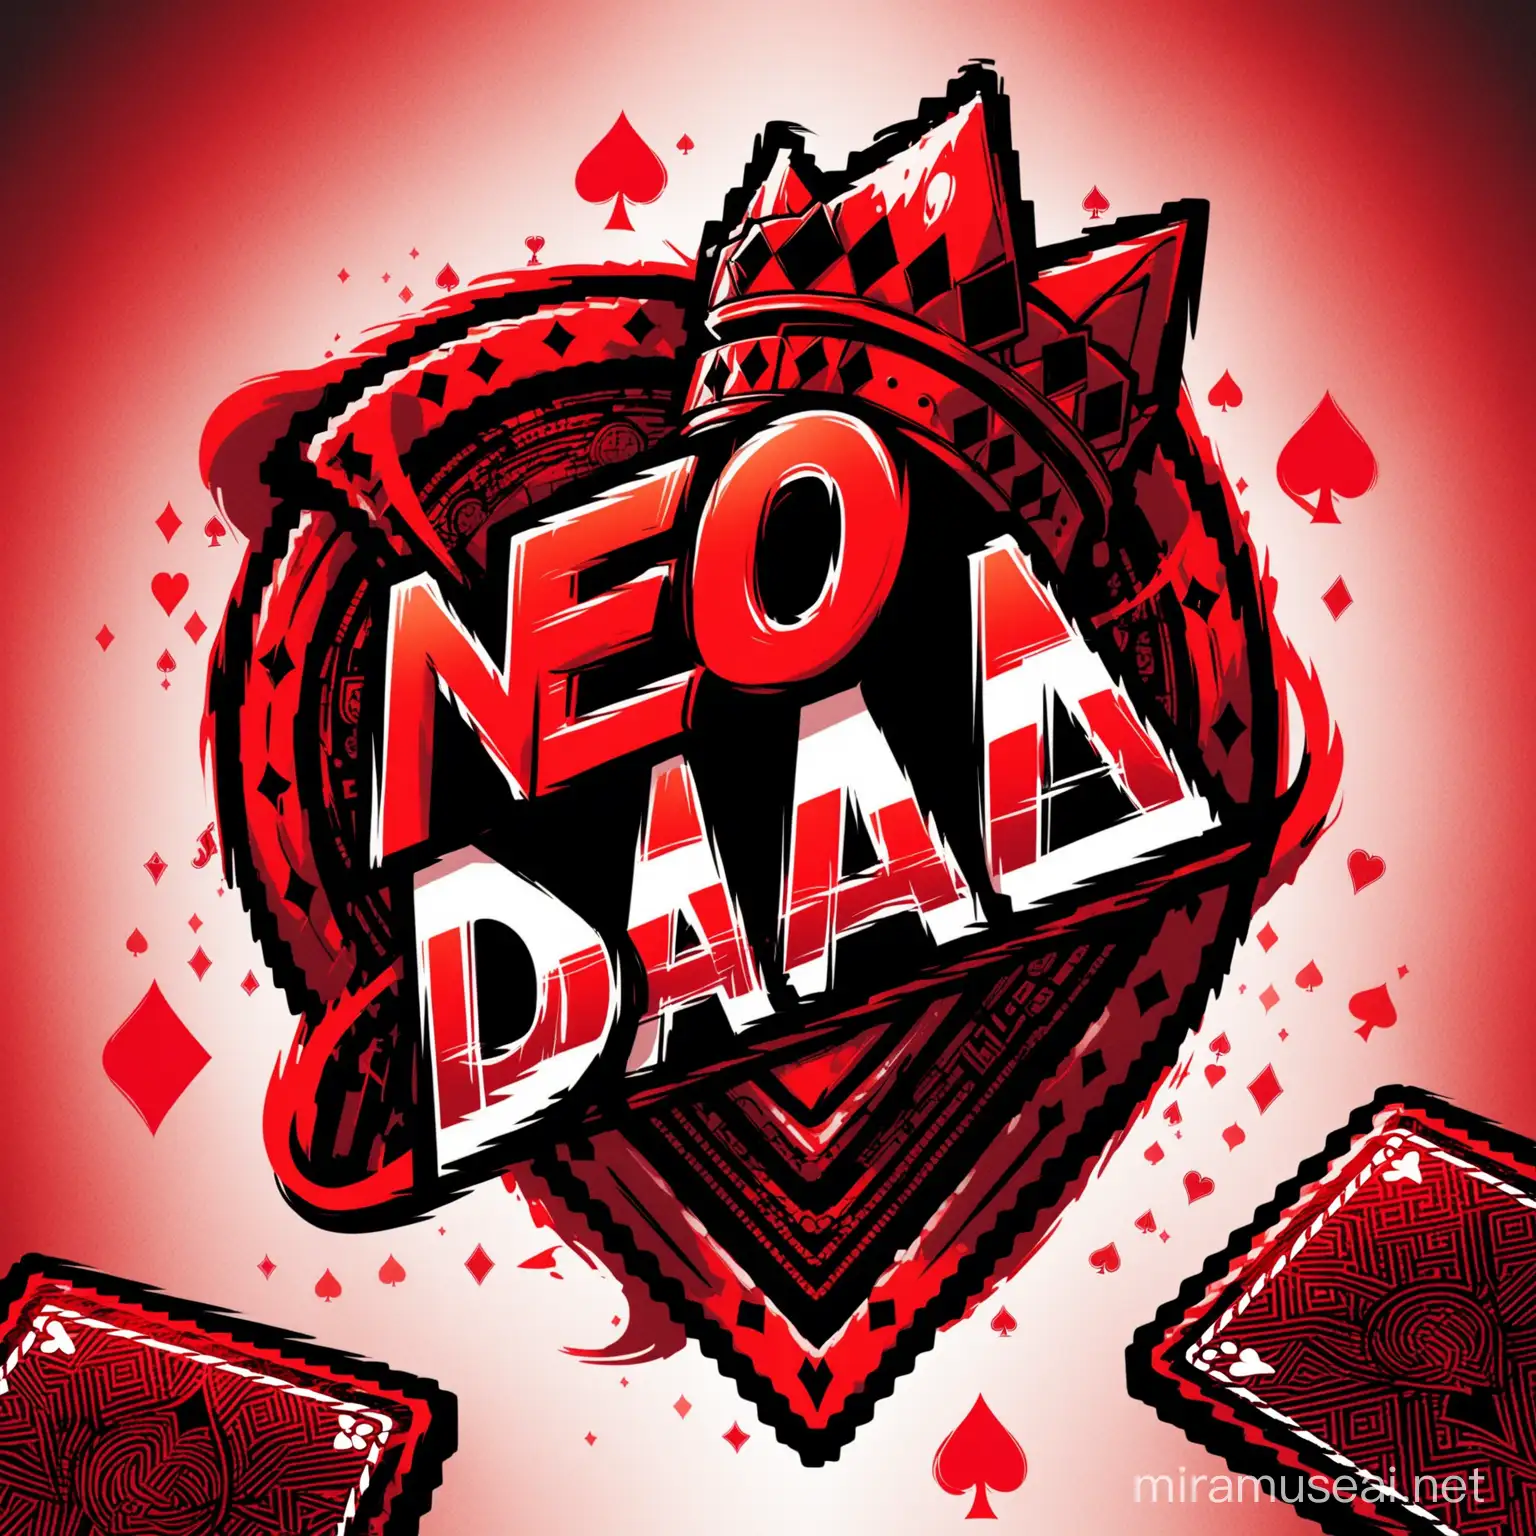 fait moi un logo en utilisant le nom"Neo D.A" et des cartes à jouer et des couleur rouge et noir
